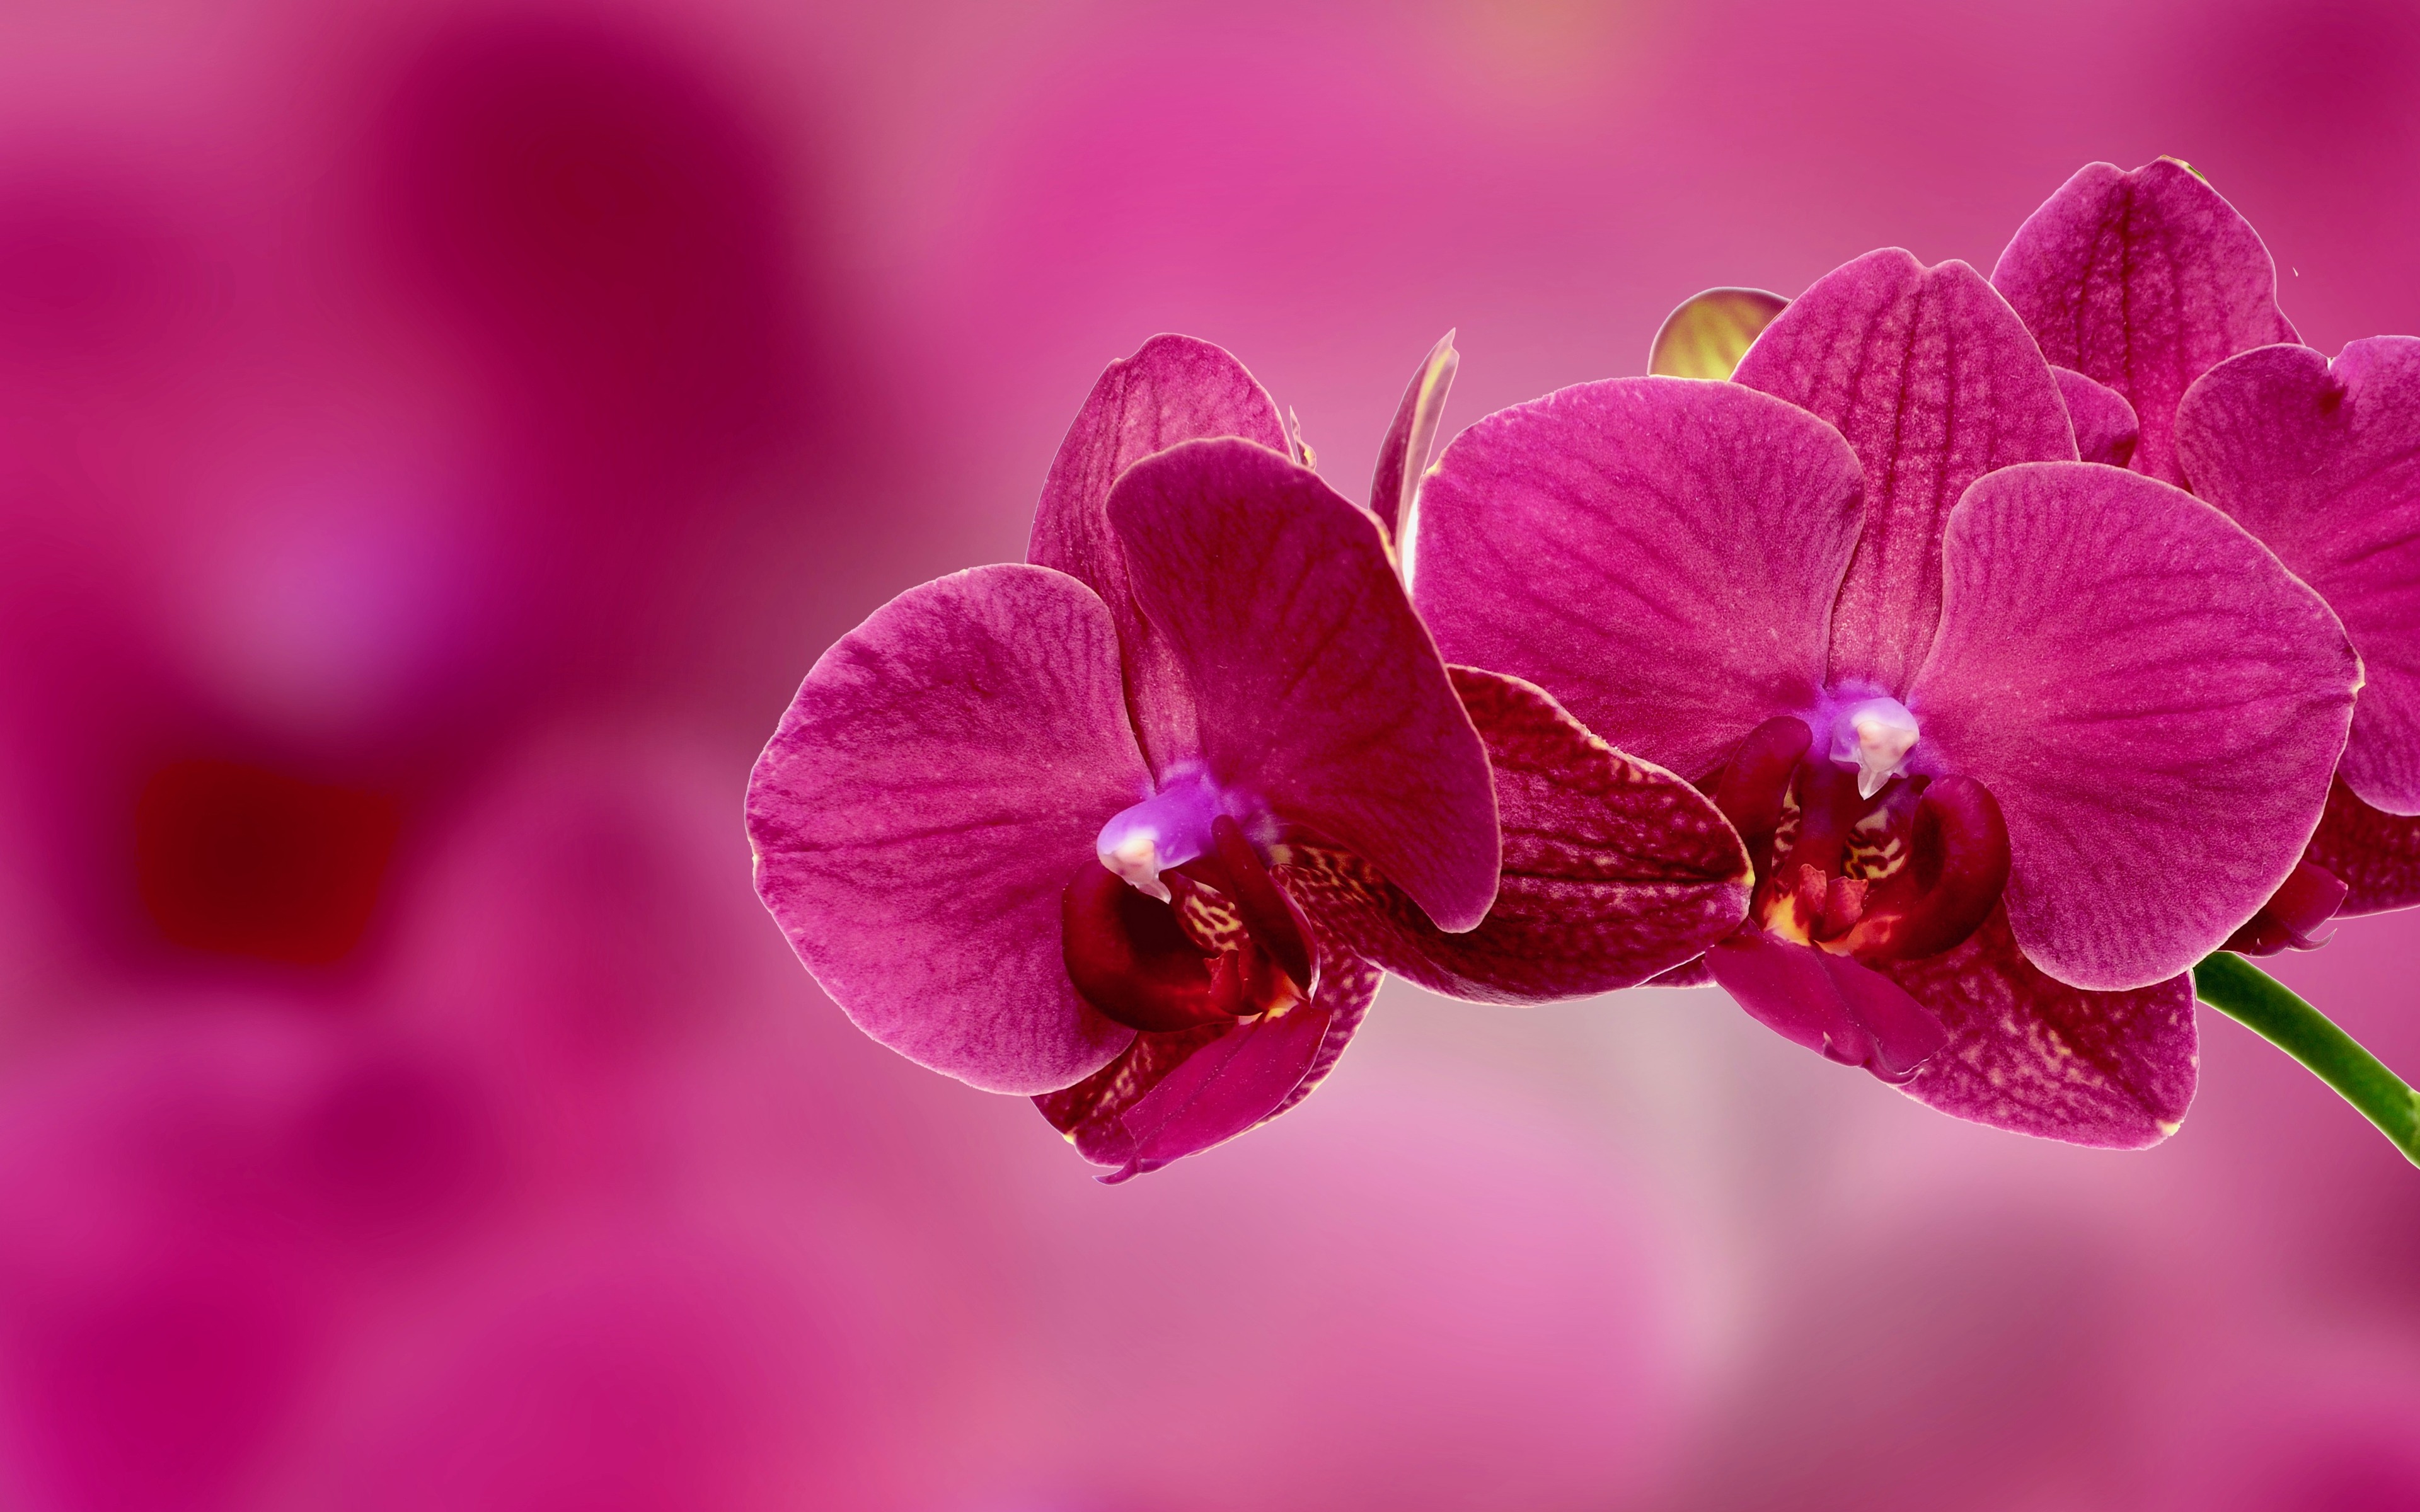 [31+] Orchid Flower 4K Wallpapers | WallpaperSafari.com